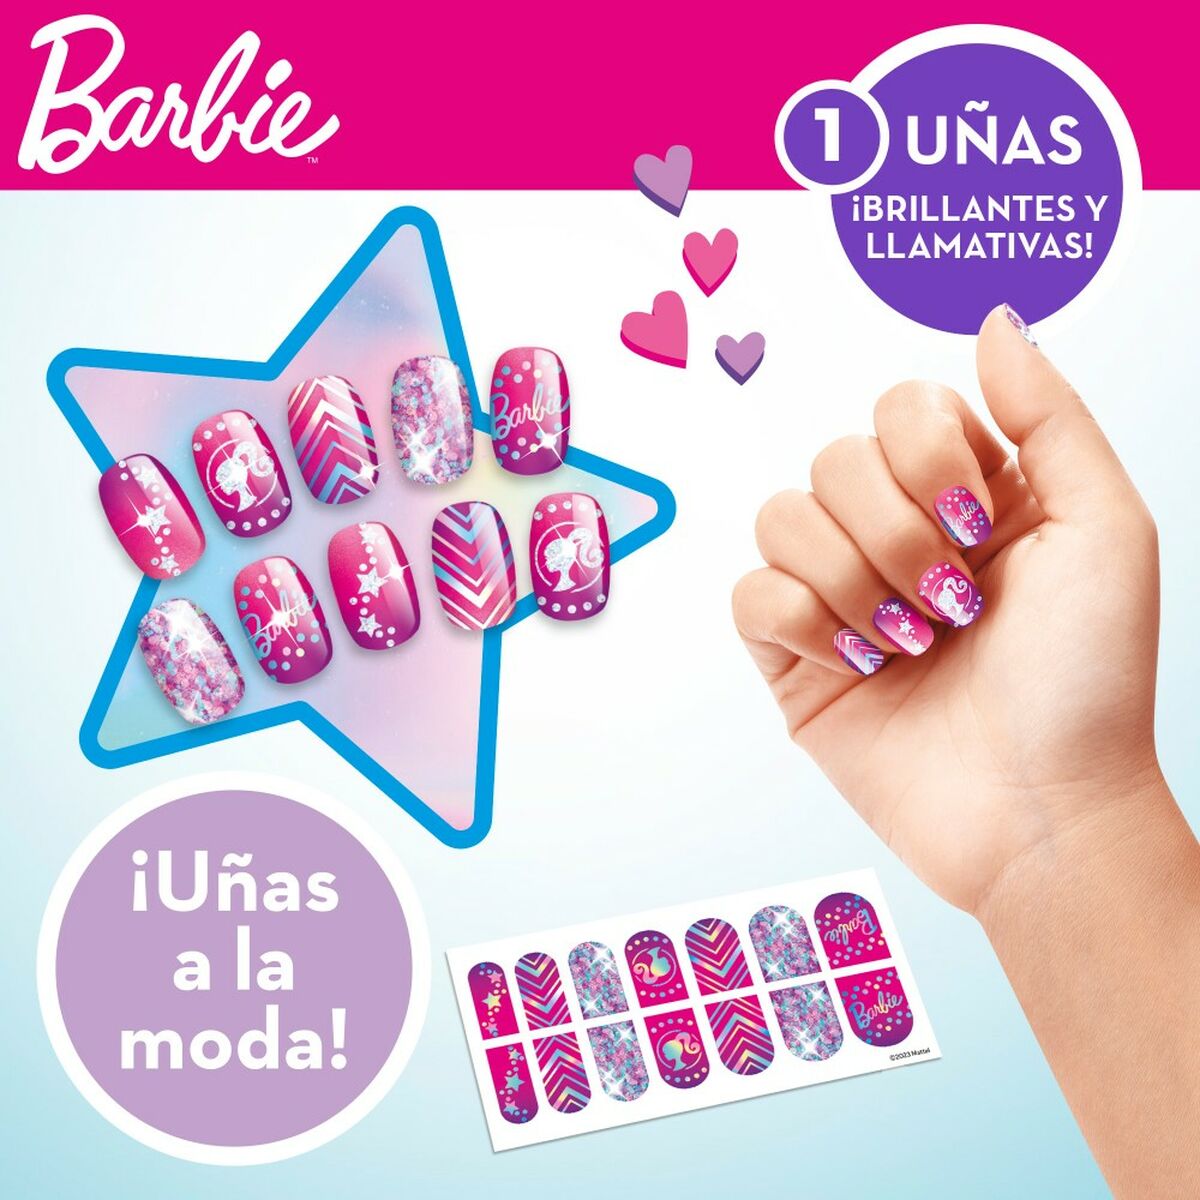 Ensemble de Beauté Barbie Sparkling 2 x 13 x 2 cm 3-en-1